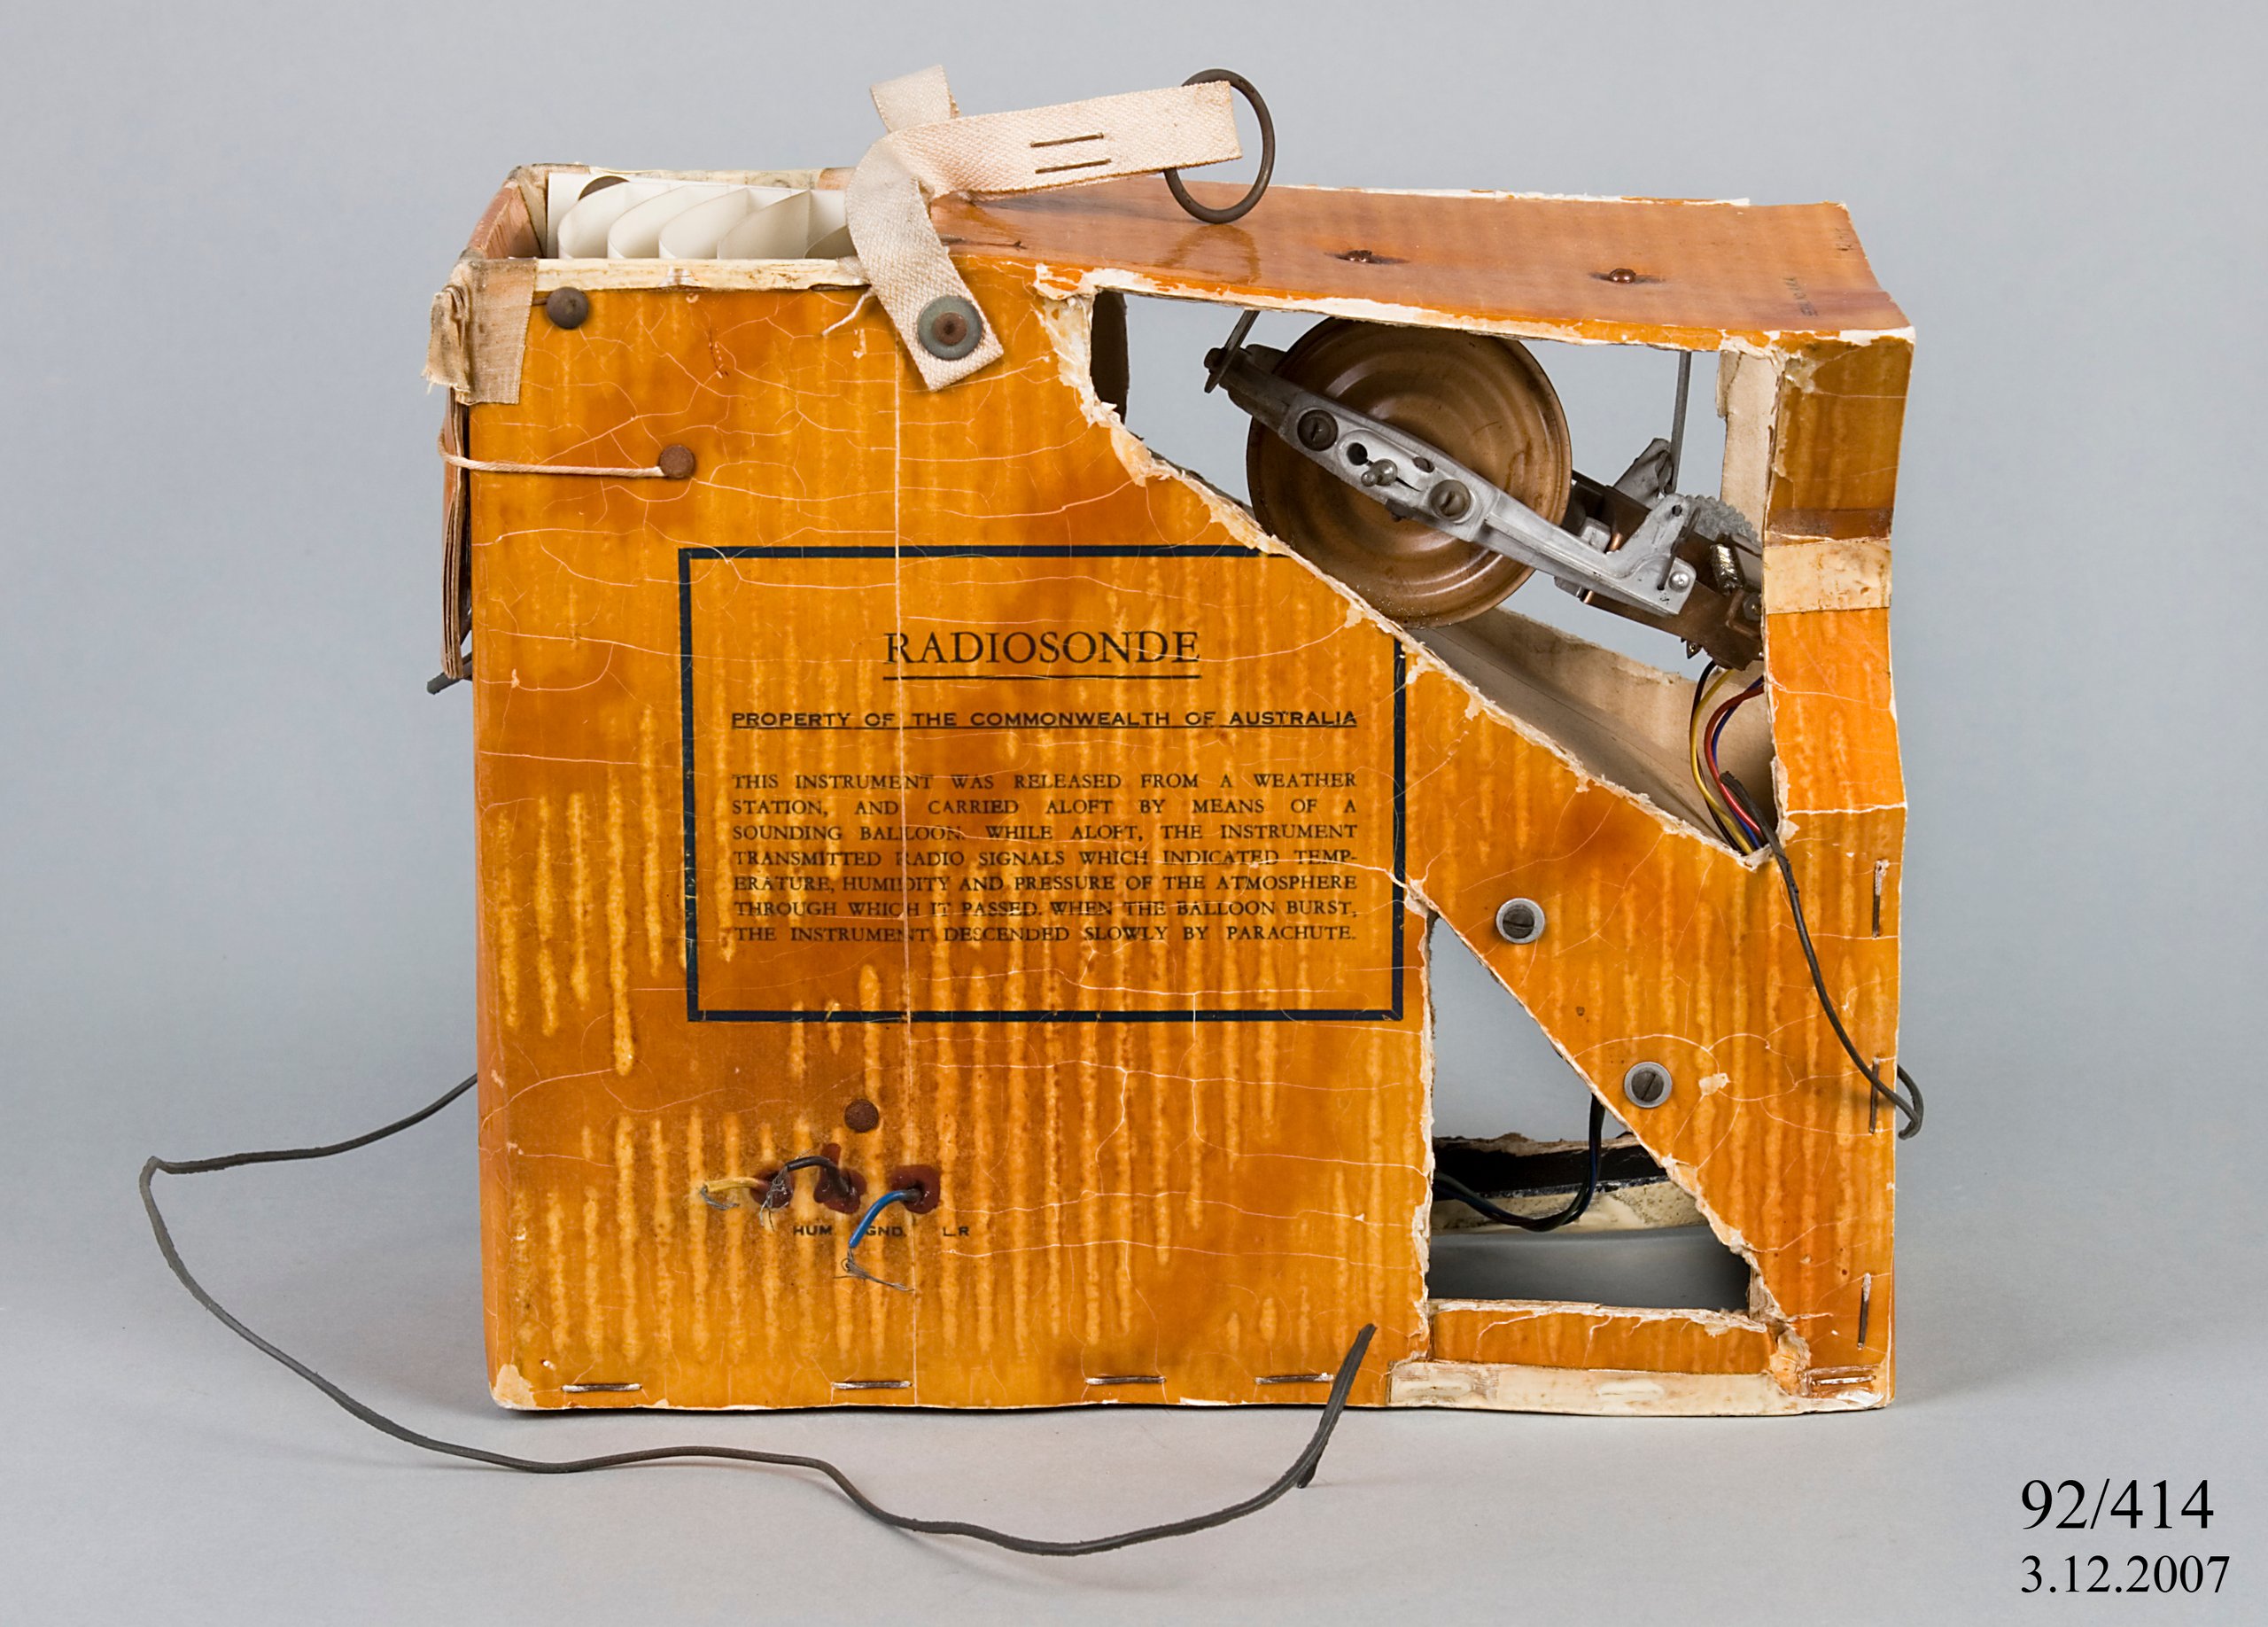 AWA radiosonde atmospheric measuring instrument